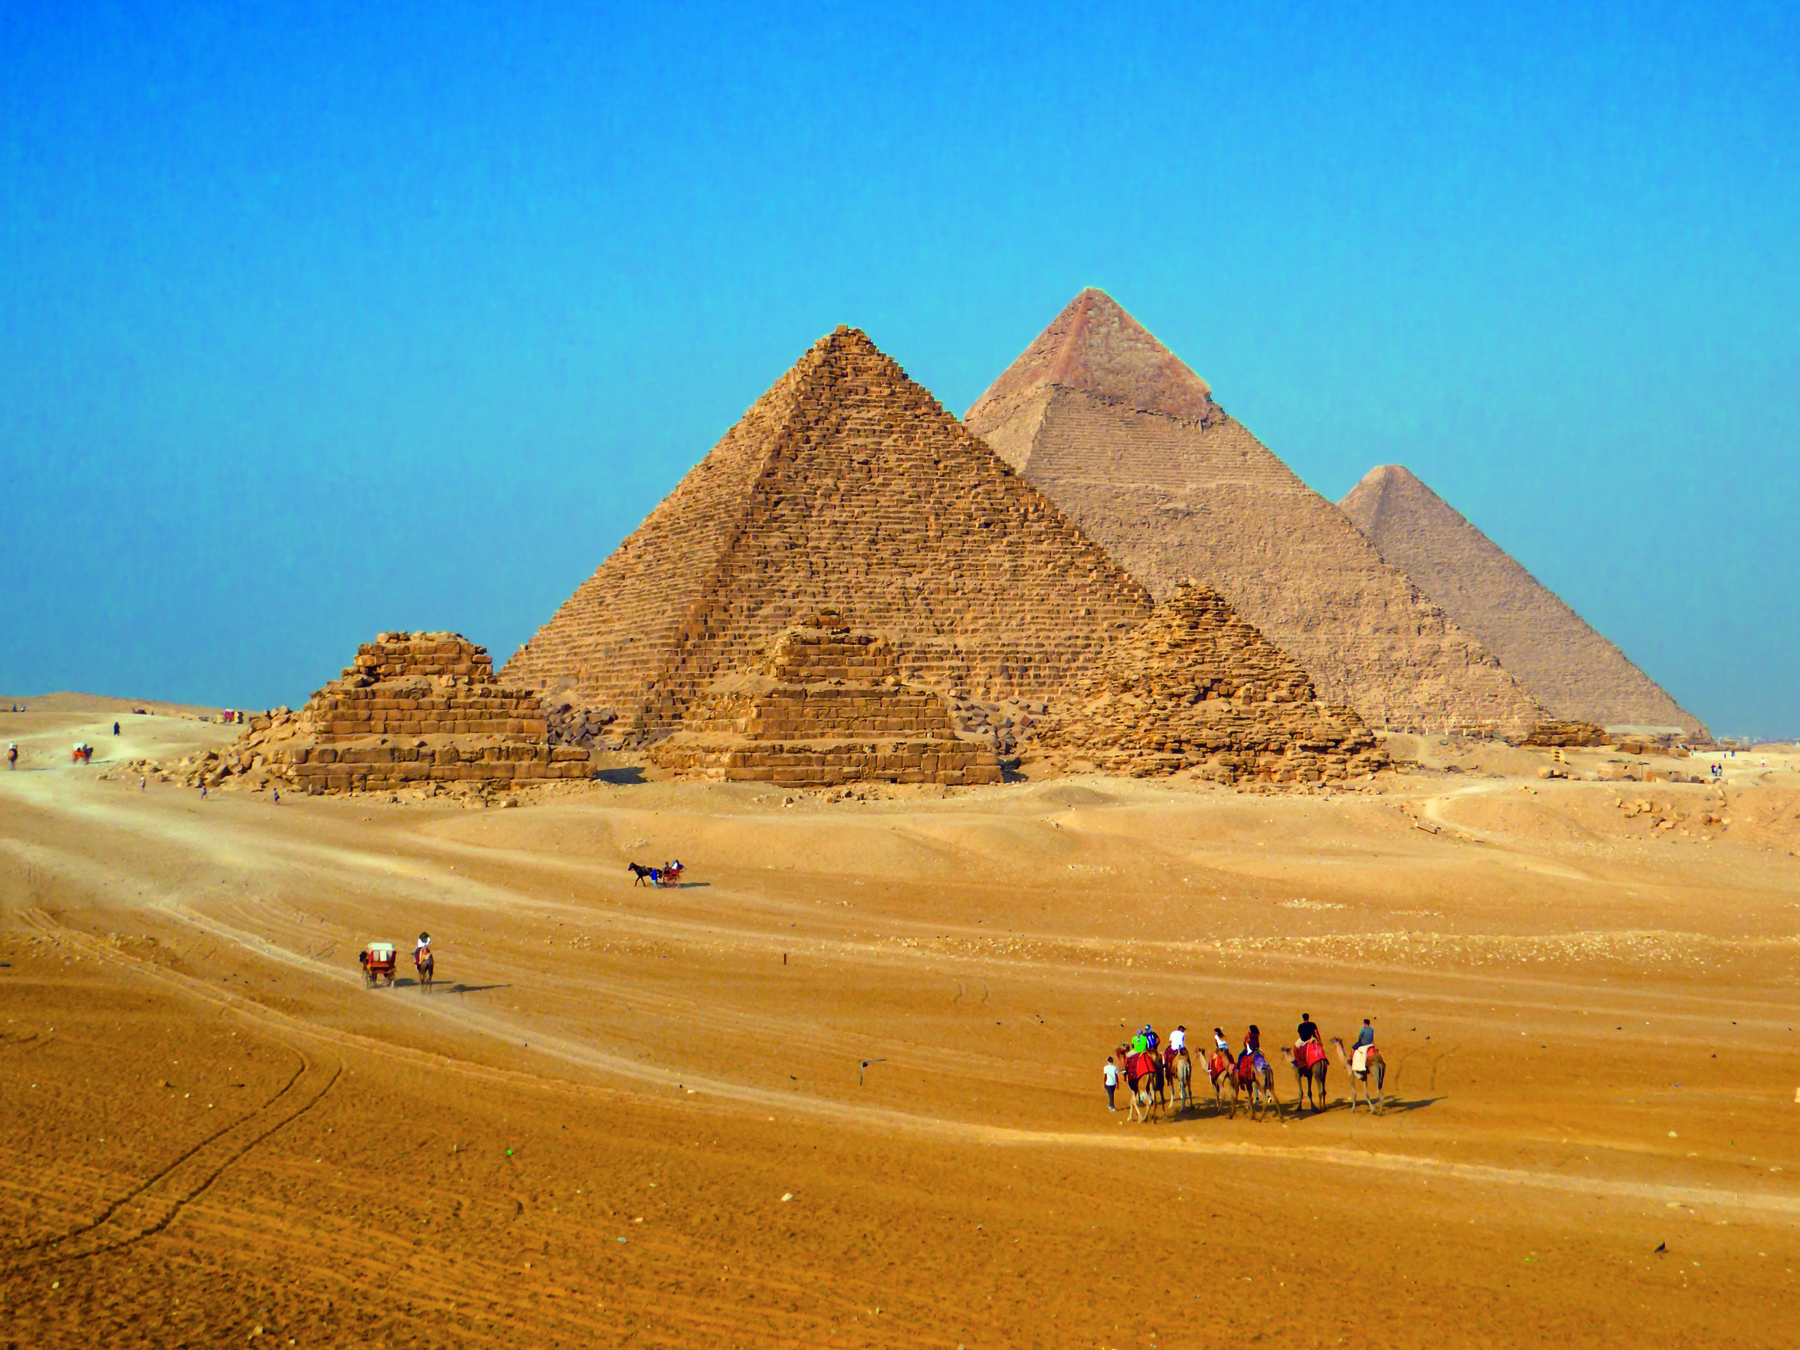 Fotografia. Paisagem desértica com seis pirâmides: três menores, na frente, e três maiores, ao fundo. As menores estão com suas estruturas danificadas. Na parte inferior da imagem, algumas pessoas montadas em camelos.